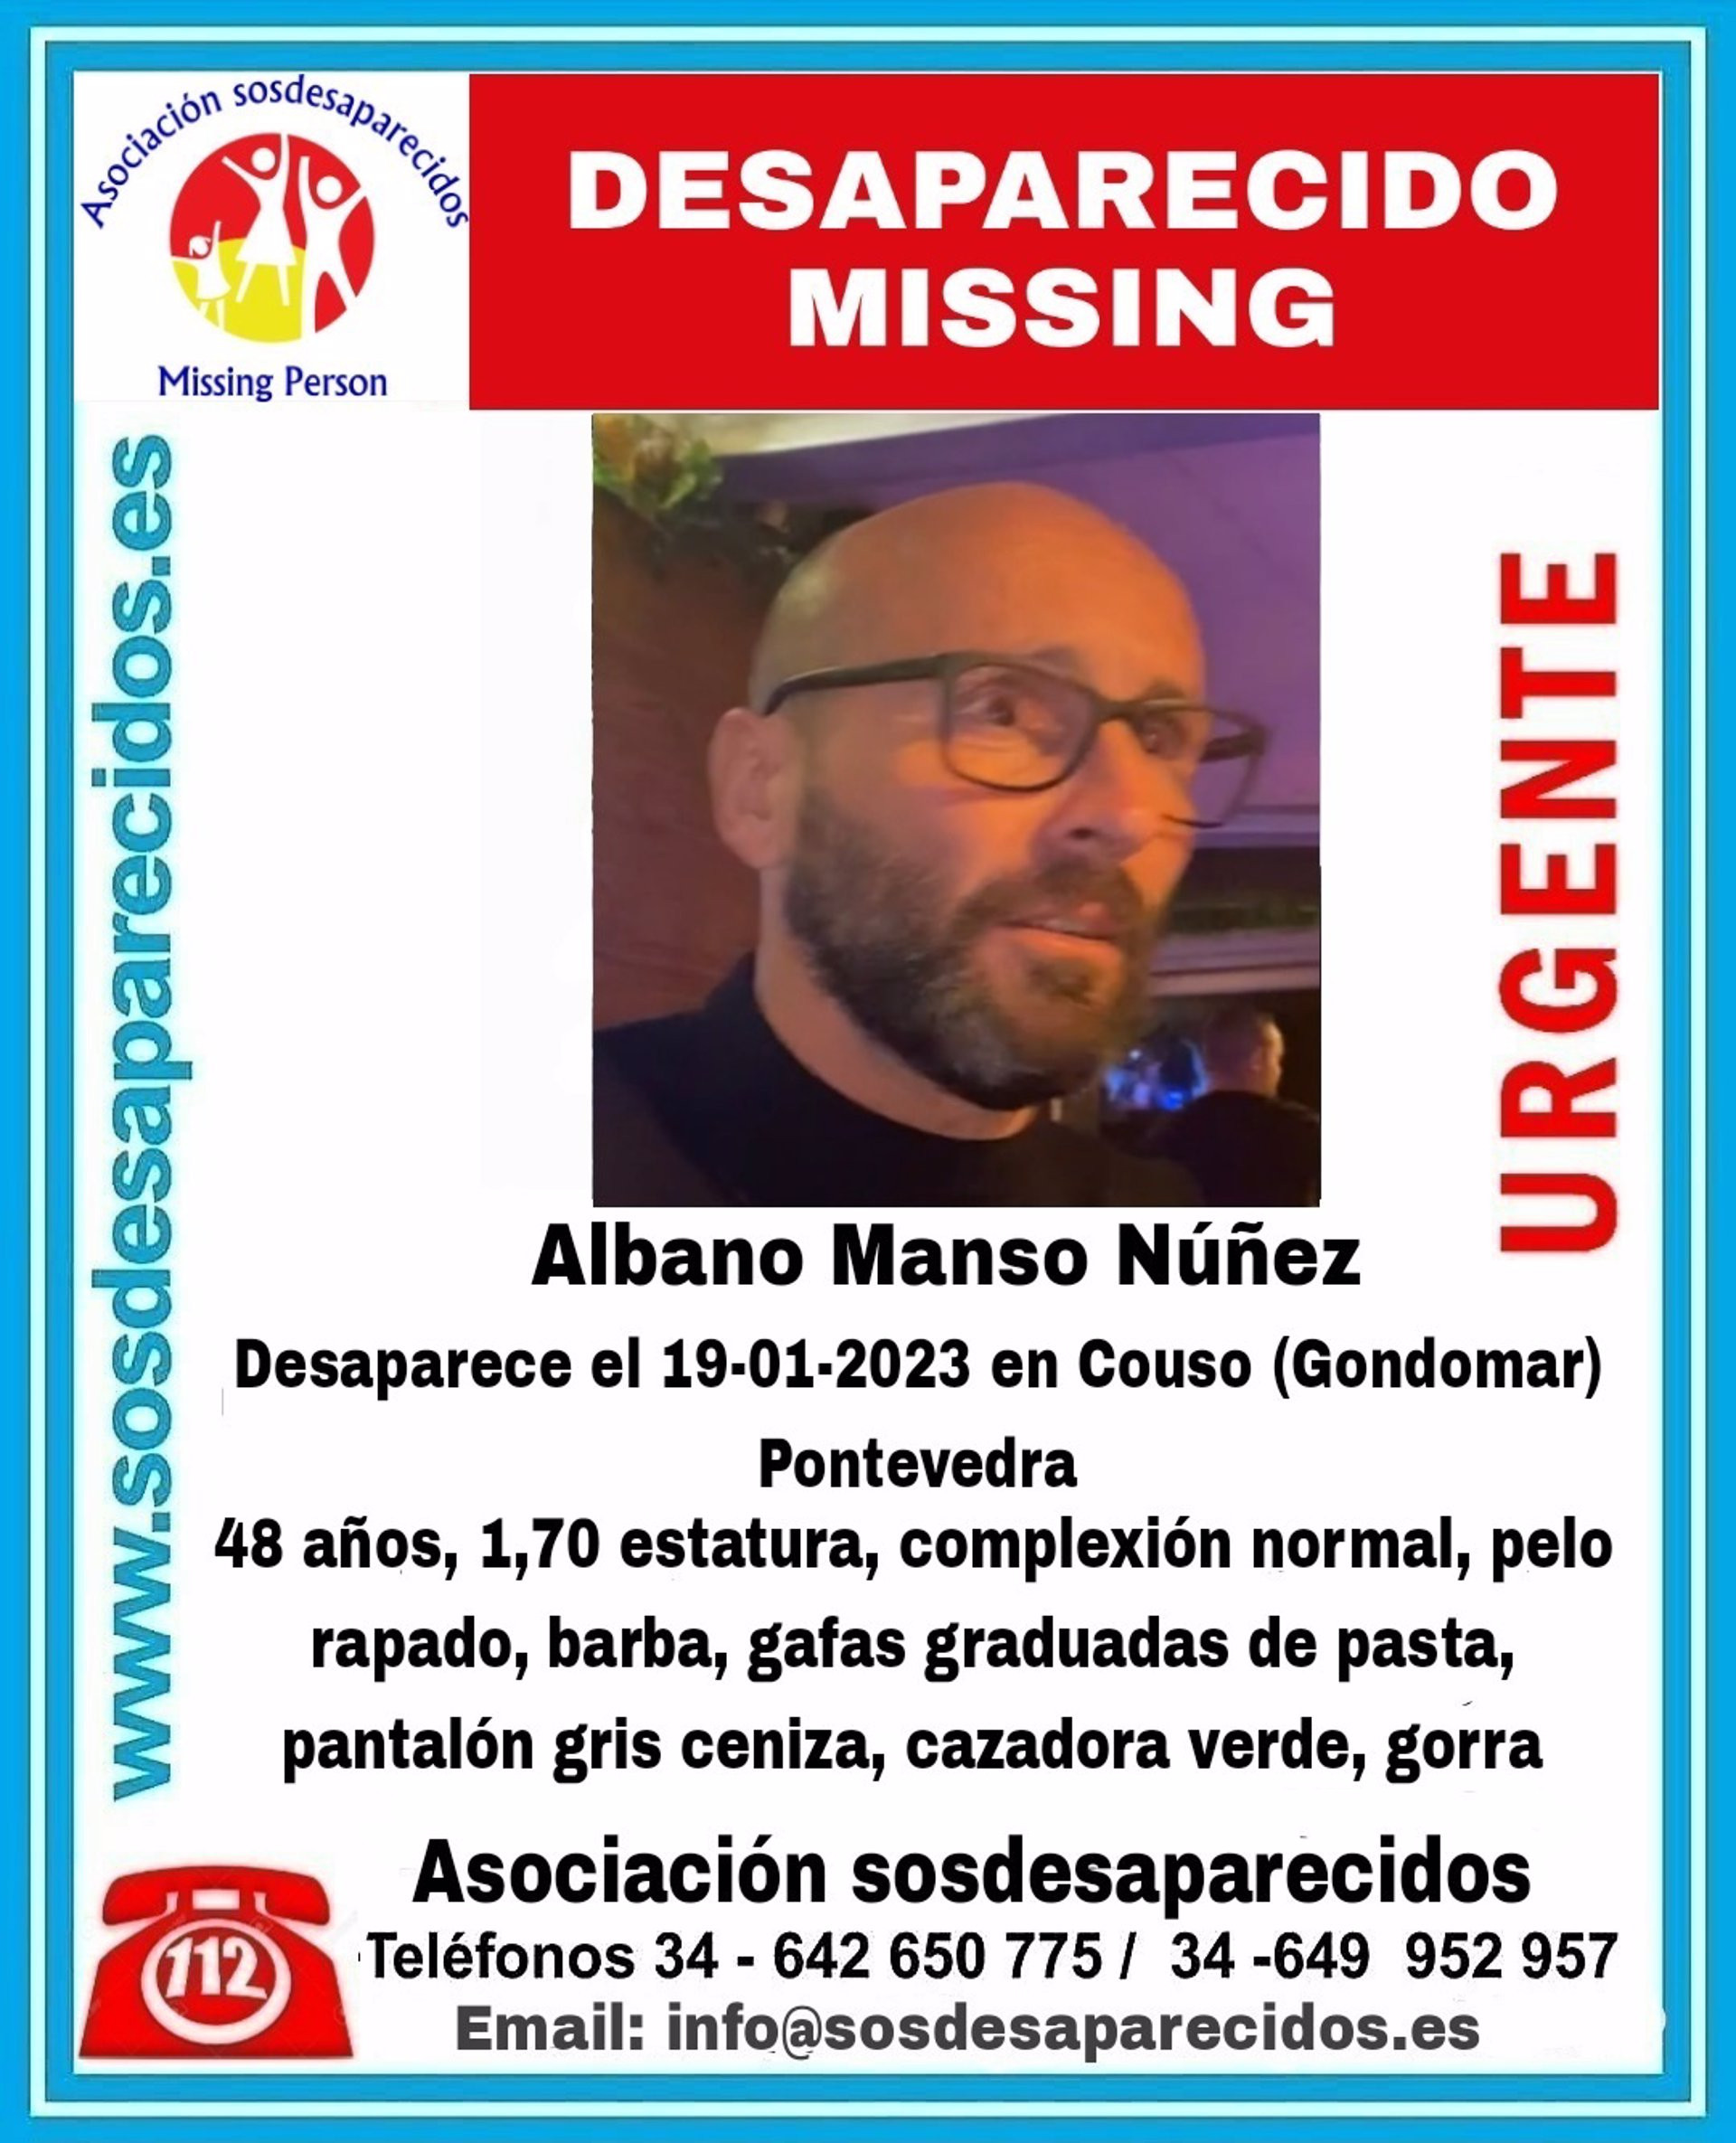 25/01/2023 Imagen del desaparecido en Gondomar.
SOCIEDAD
SOS DESAPARECIDOS